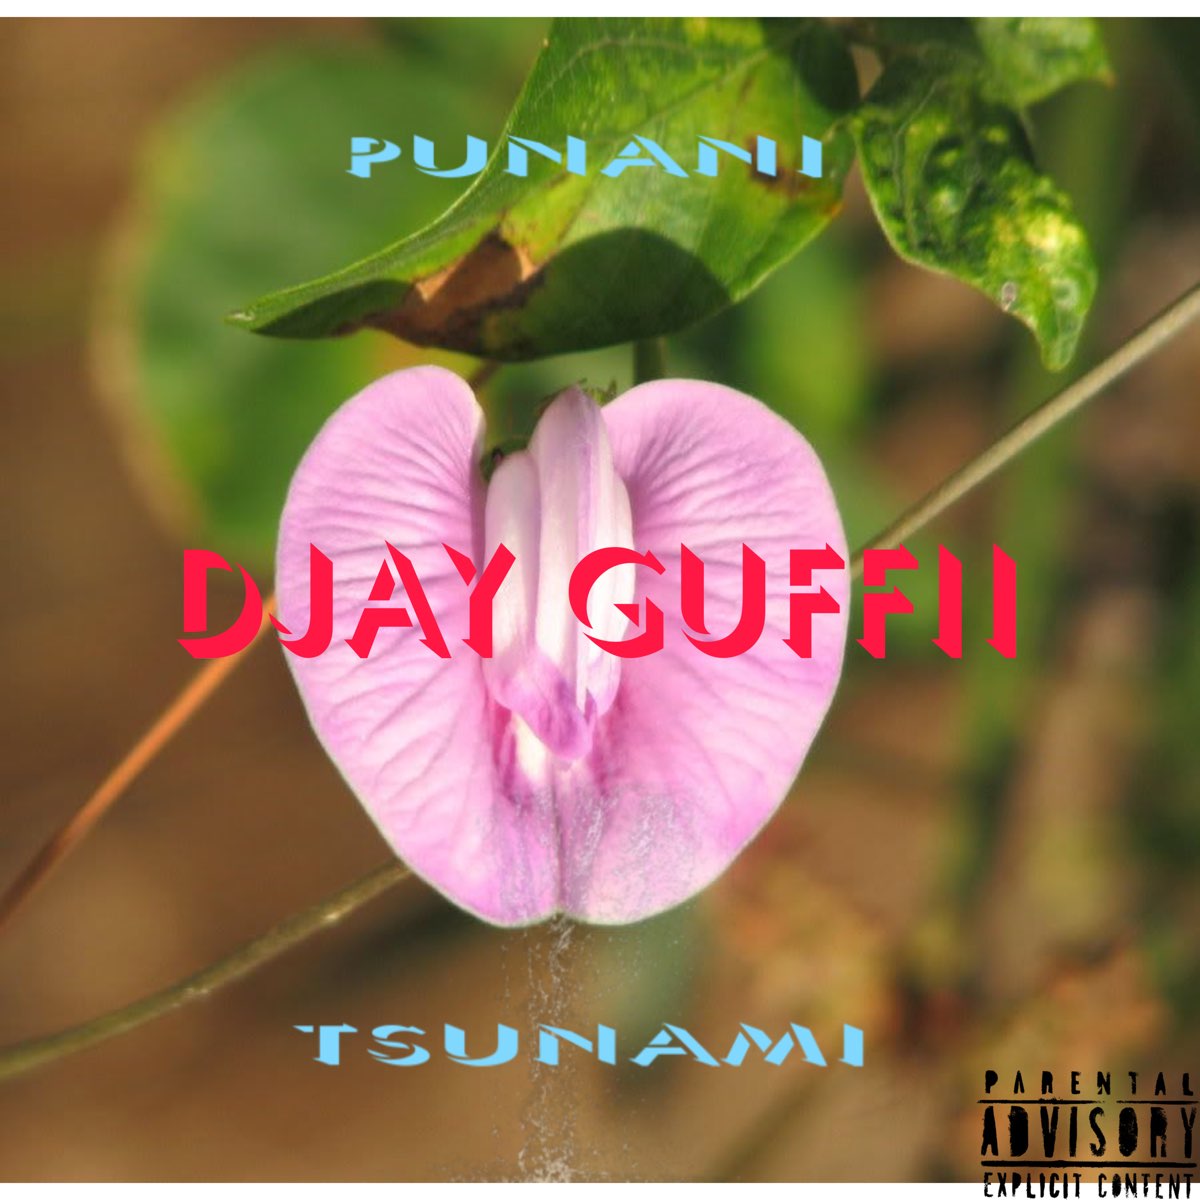 Punani Tsunami - Single - Album by DJ Guffii - Apple Music